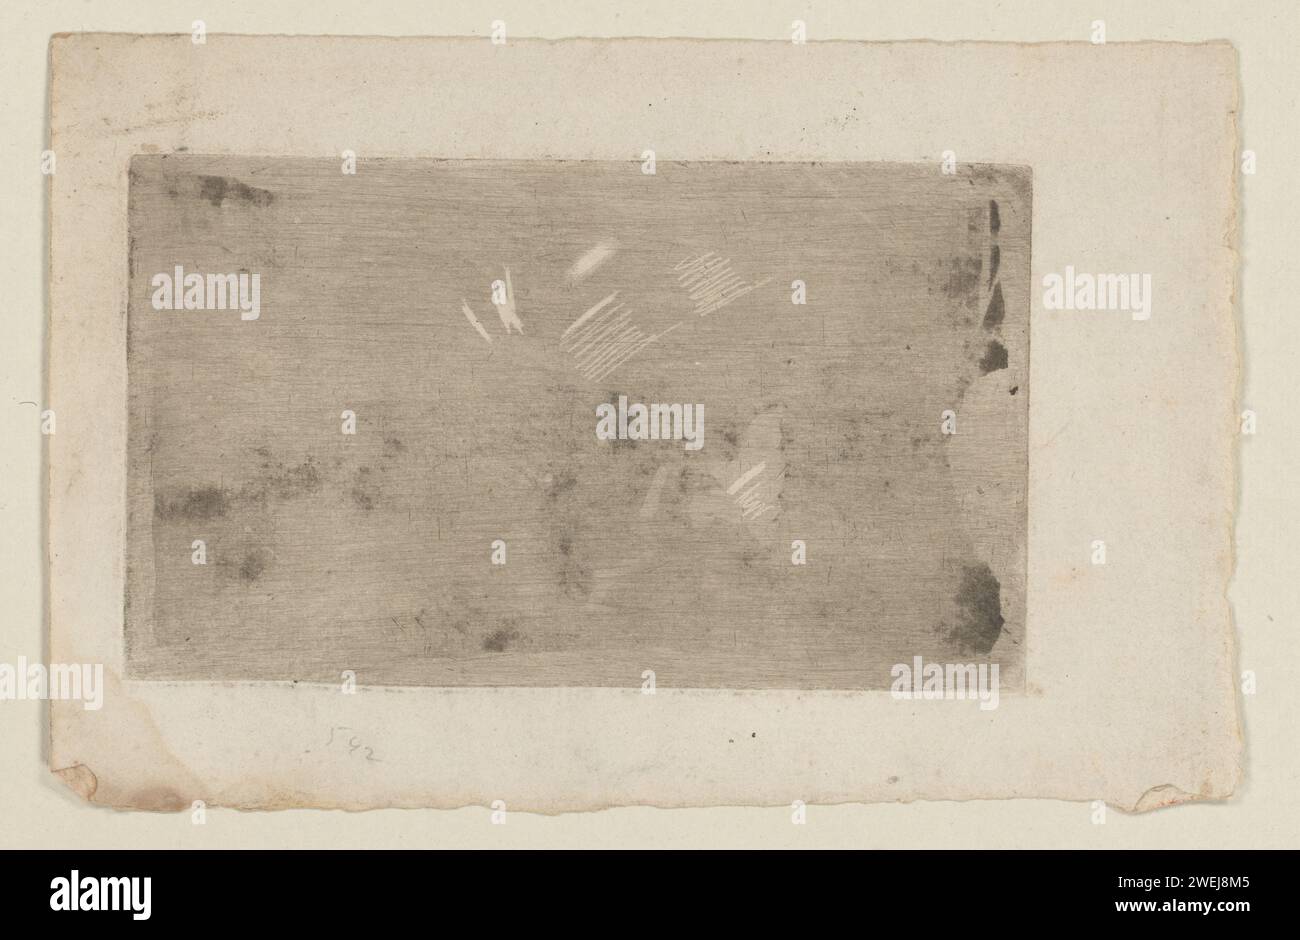 Test di tecnologia grafica, Cornelis Ploos van Amstel, 1736 - 1798 gusto di stampa per macinare nuovamente una lastra di rame colorato. In questo caso potrebbe essere stato utilizzato un ferro per lucidatura. La rivista è sciolta sul retro di un album. incisione della carta Foto Stock